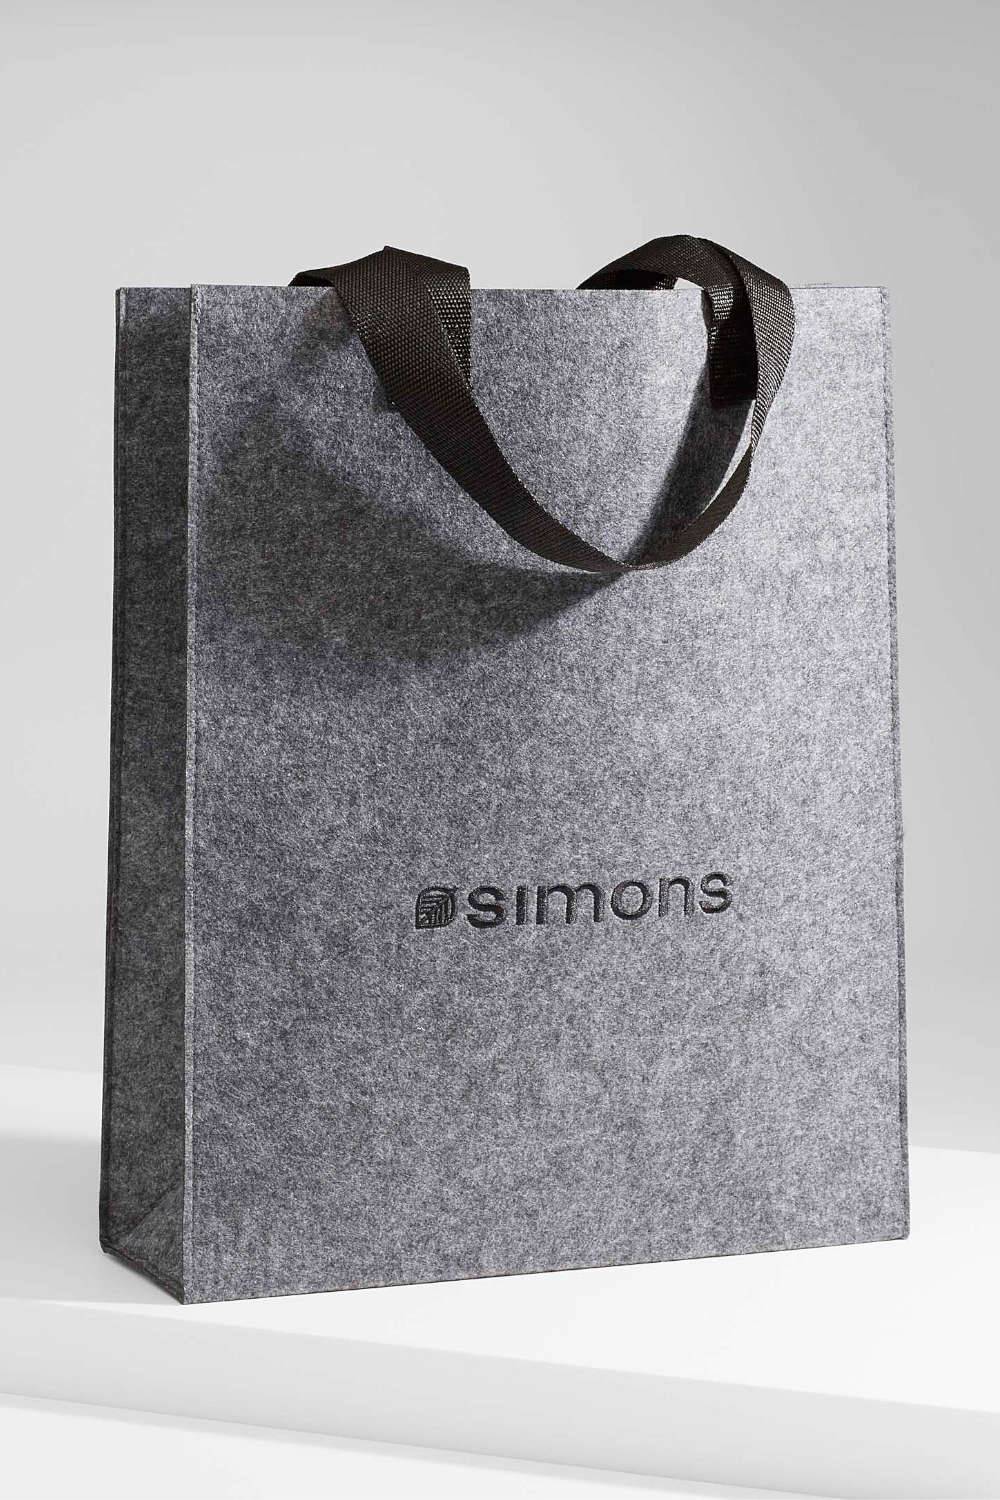 simons recycled tote bag